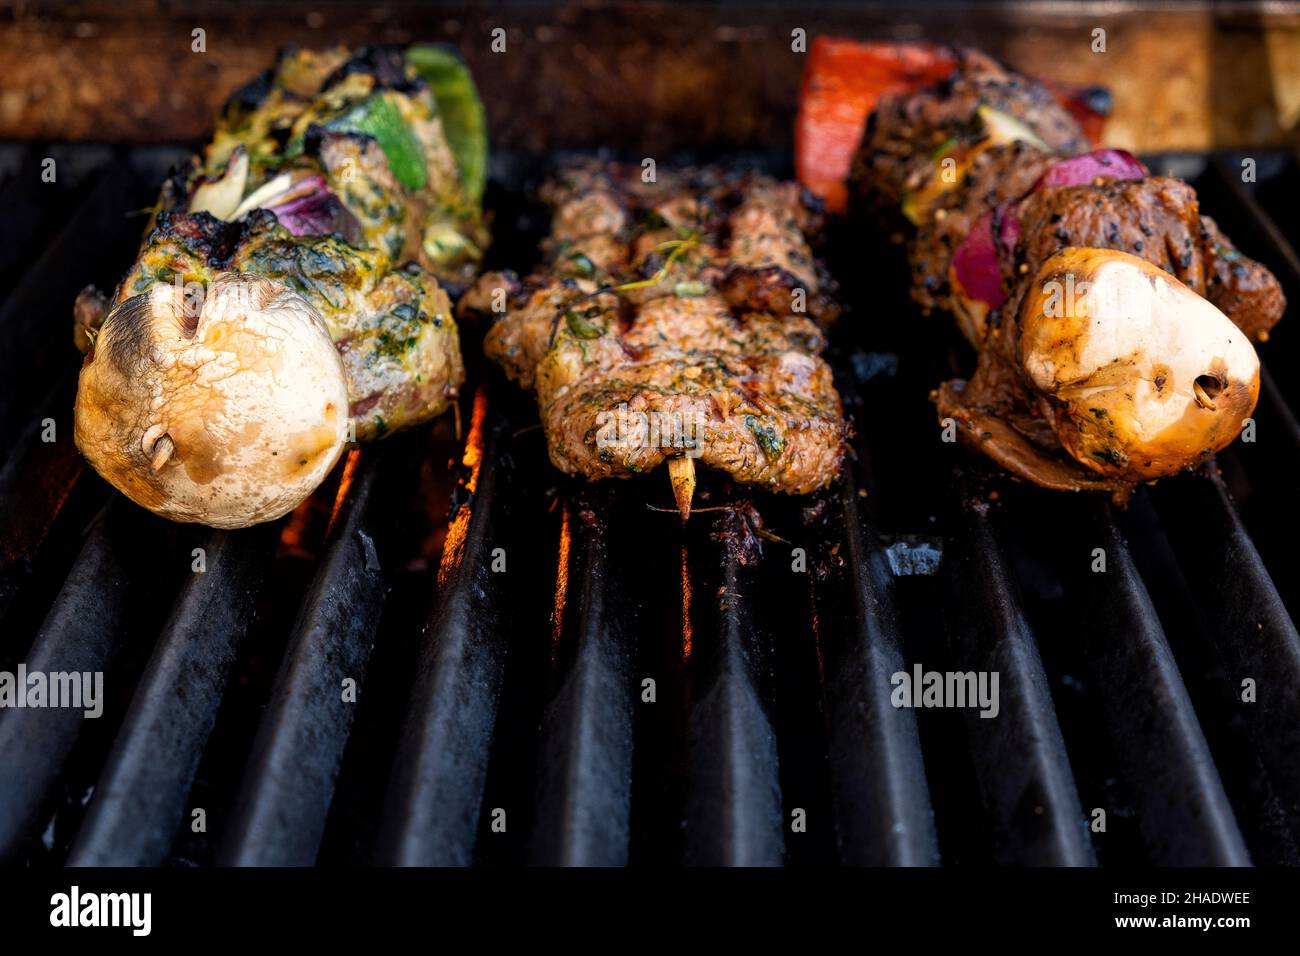 Brochetas de carne a la parrilla preparadas en una parrilla de gas a la barbacoa desde el frente Foto de stock